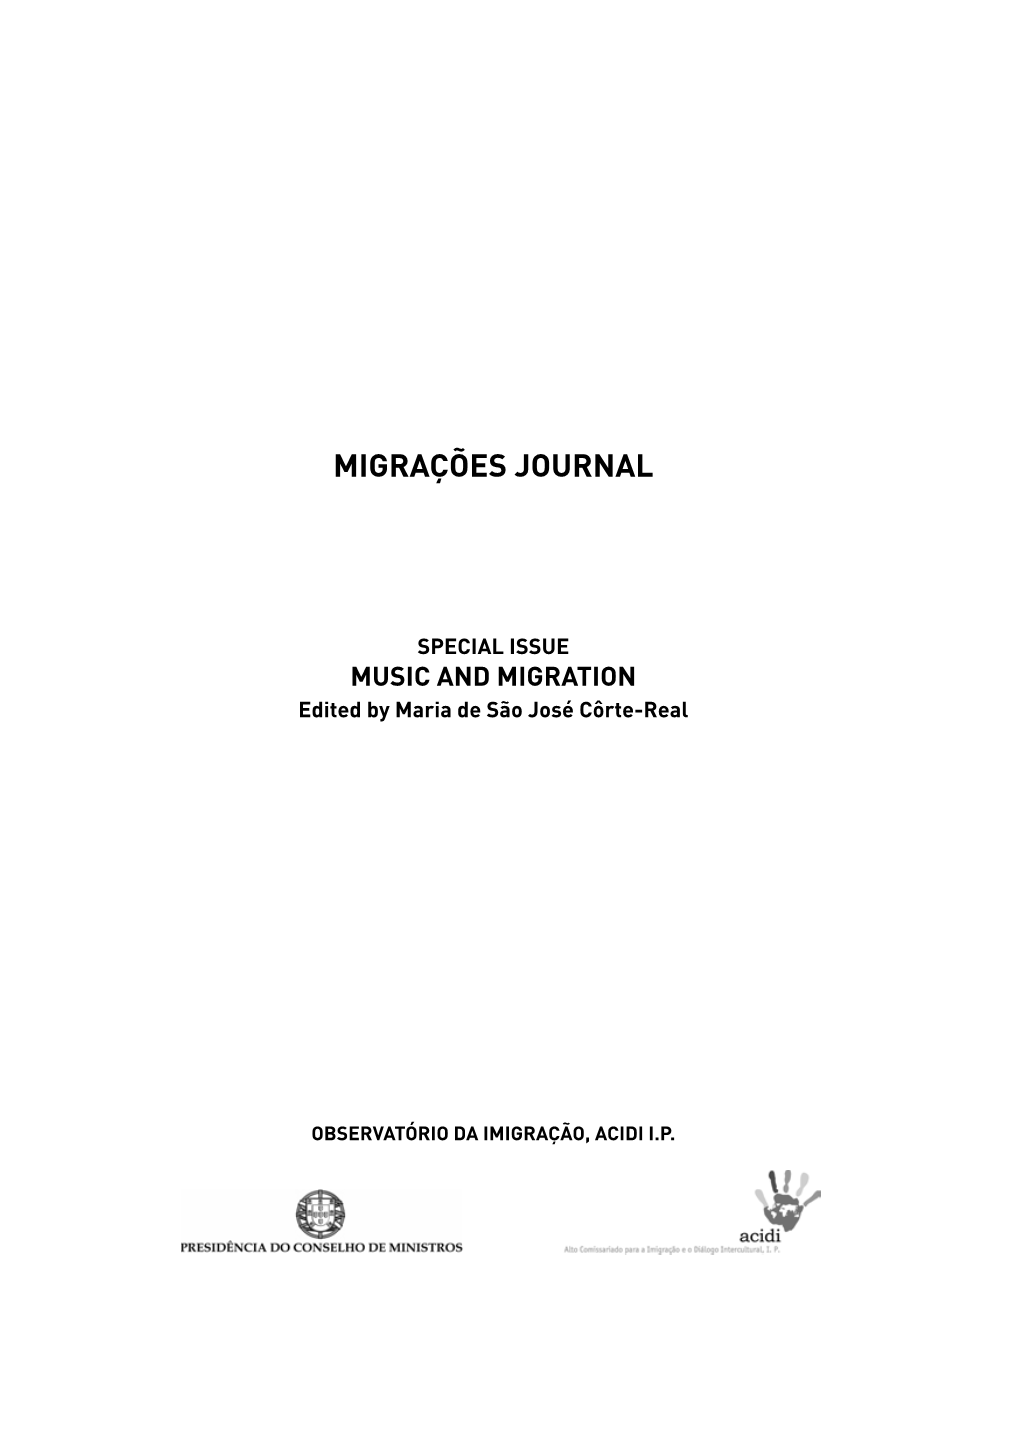 Migrações Journal